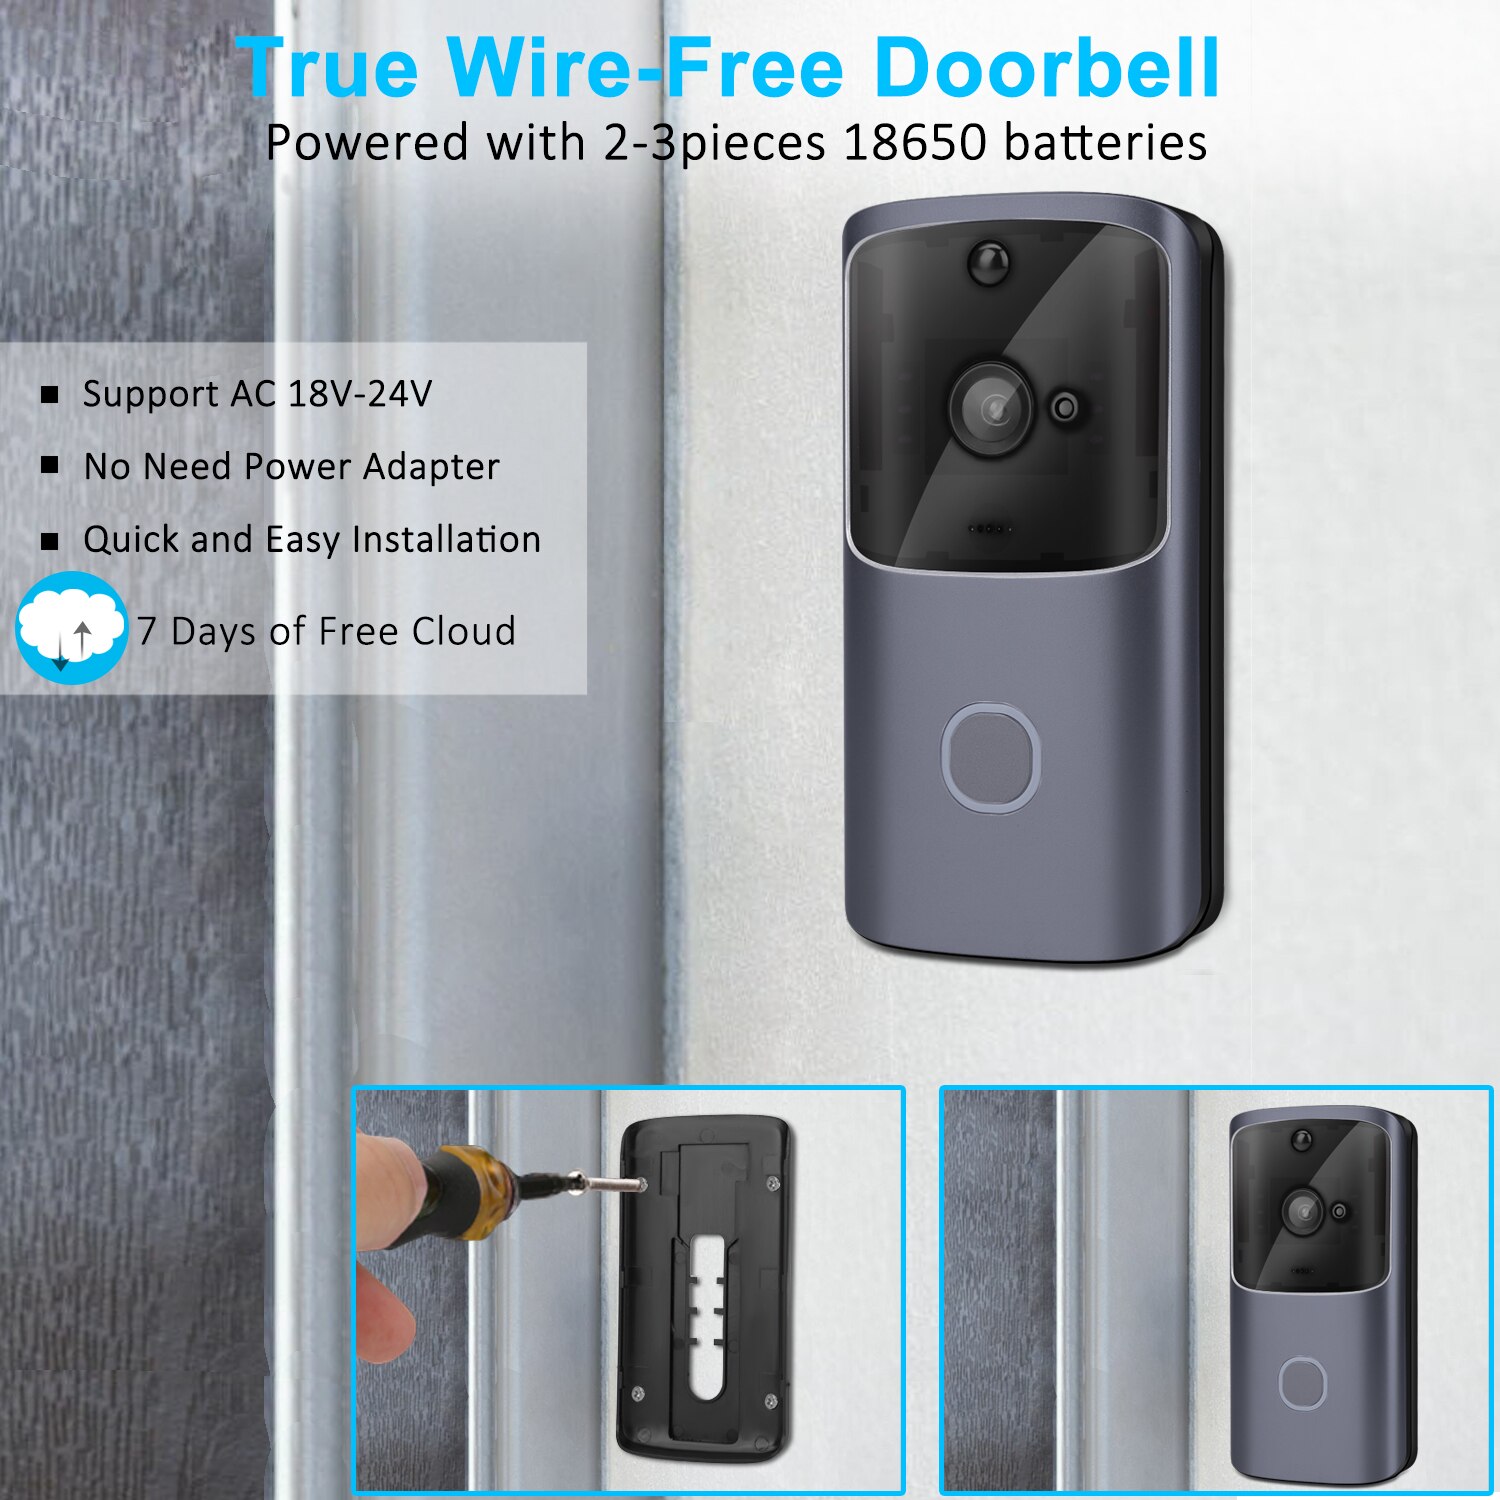 Trådløs dørklokke smart sikker dørklokke 720p/1080p sikkerhedskamera til hjemmet